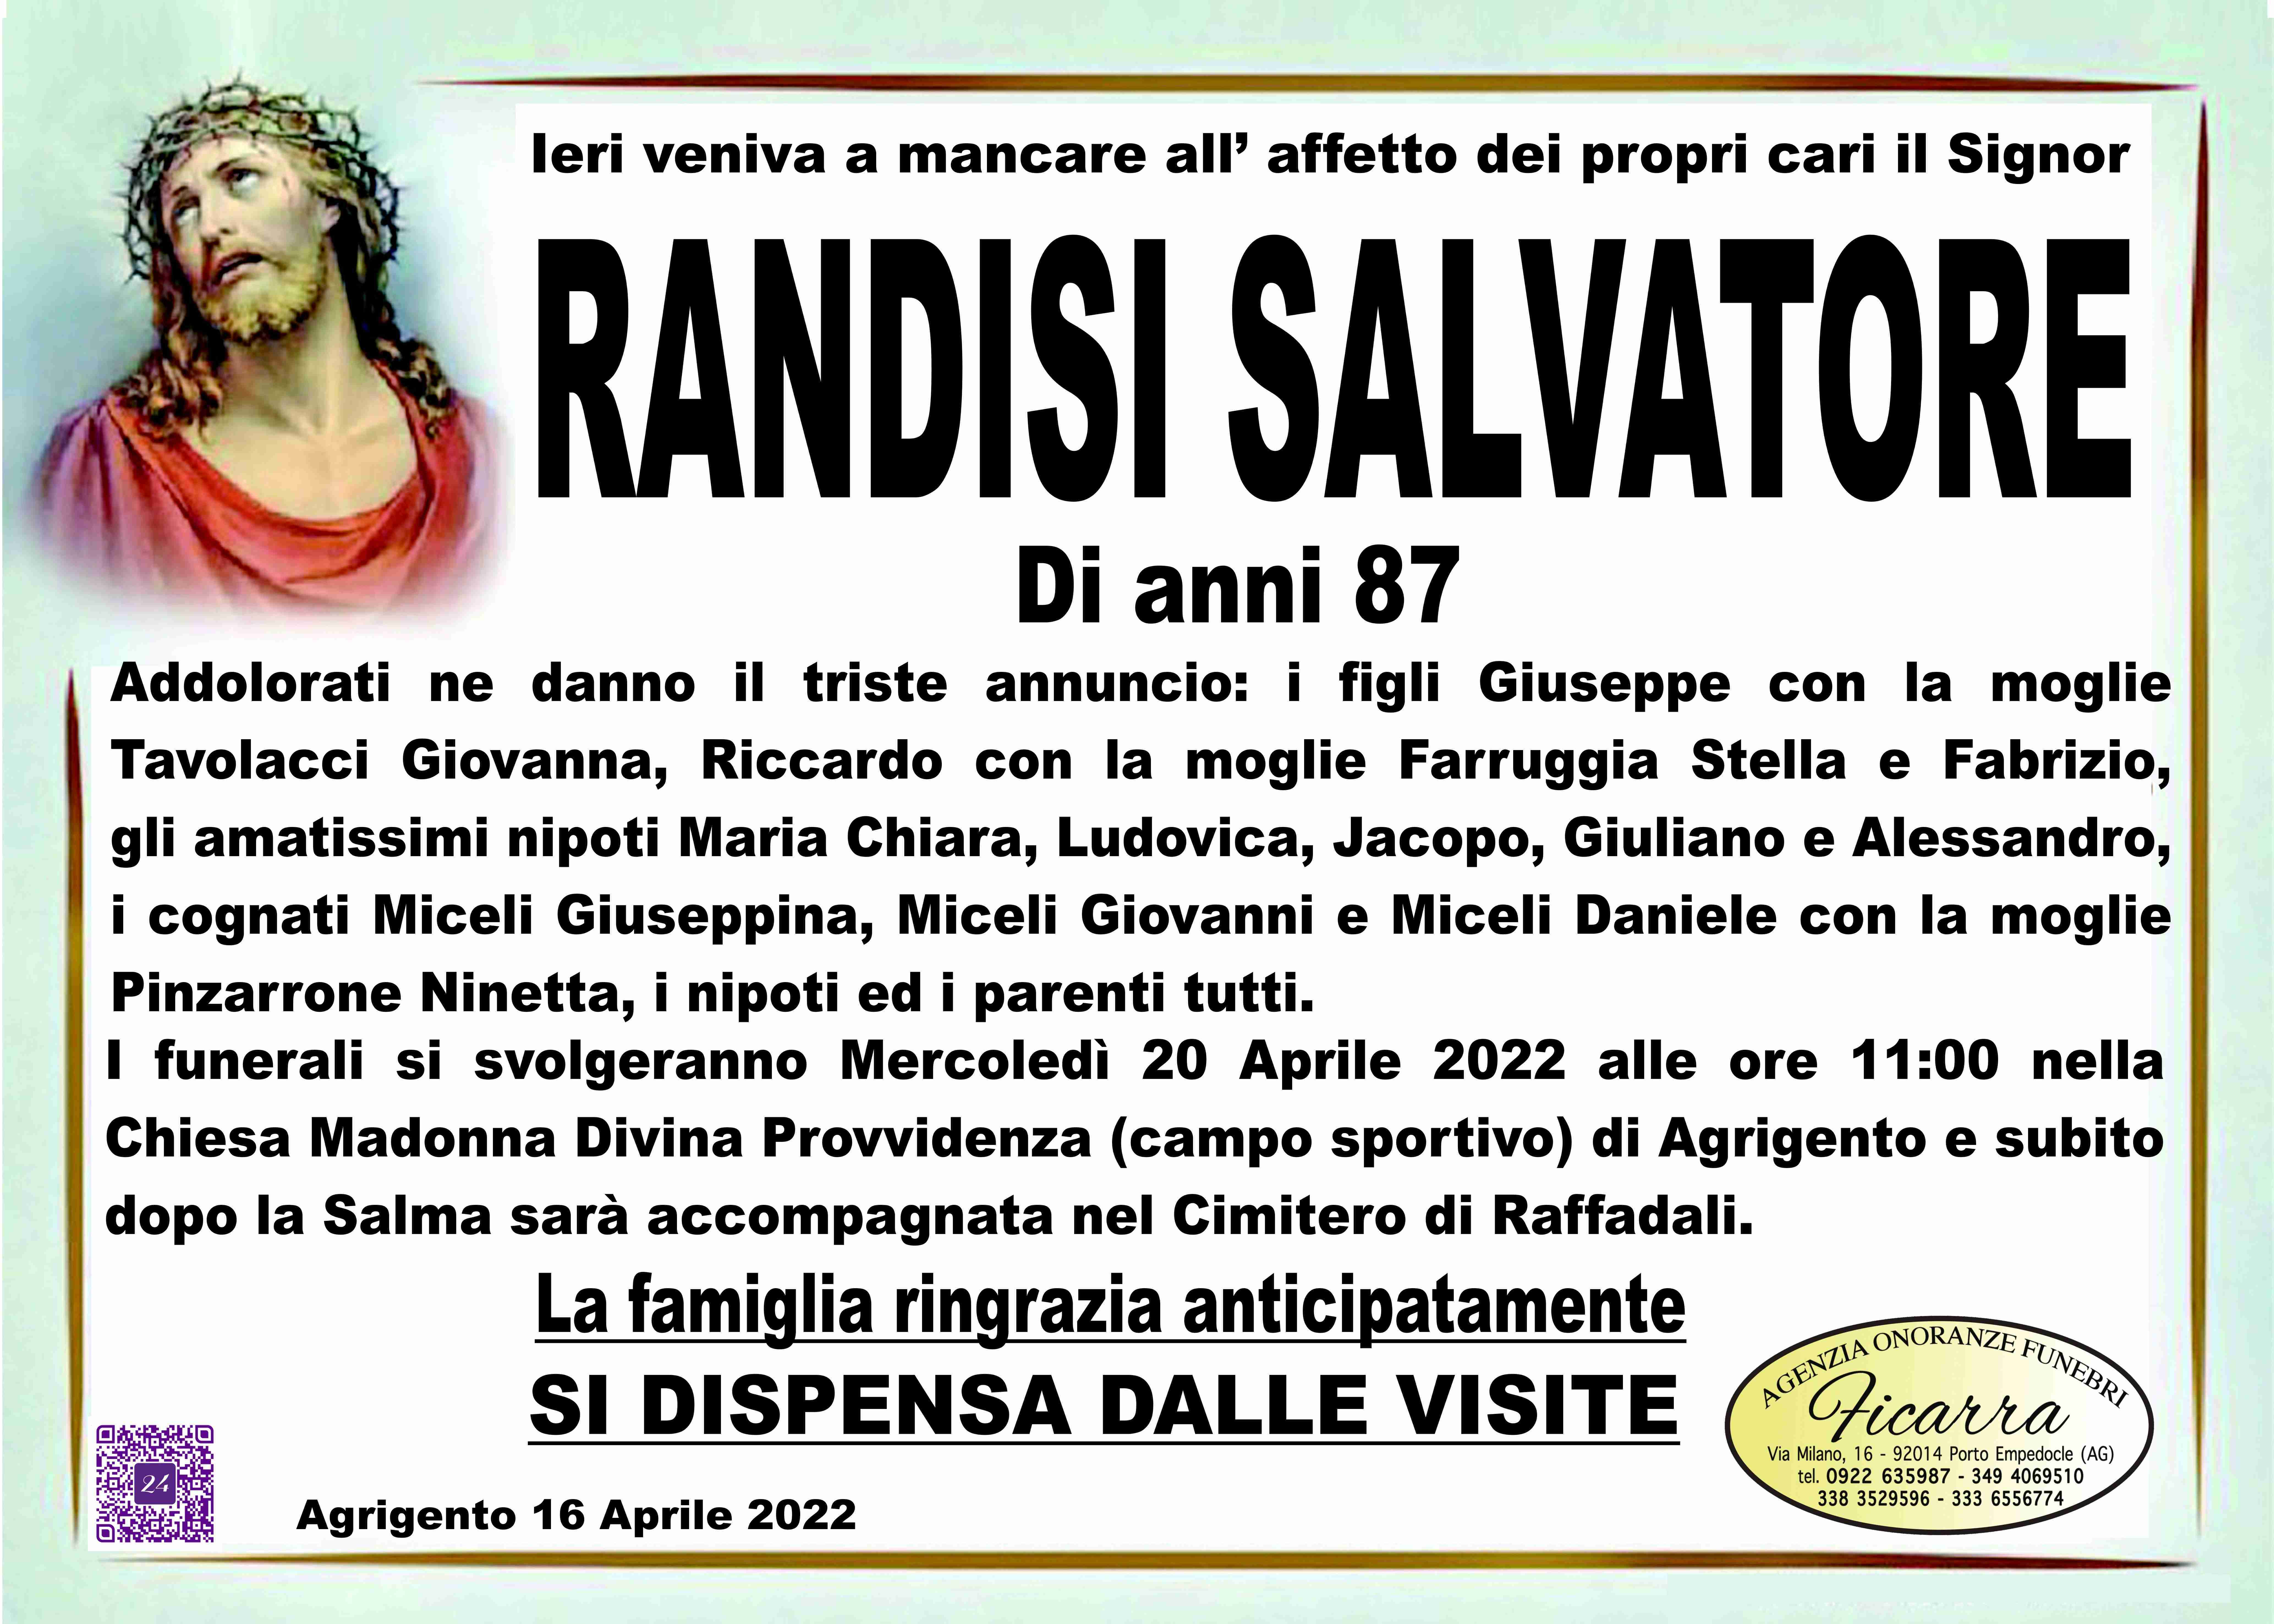 Salvatore Randisi